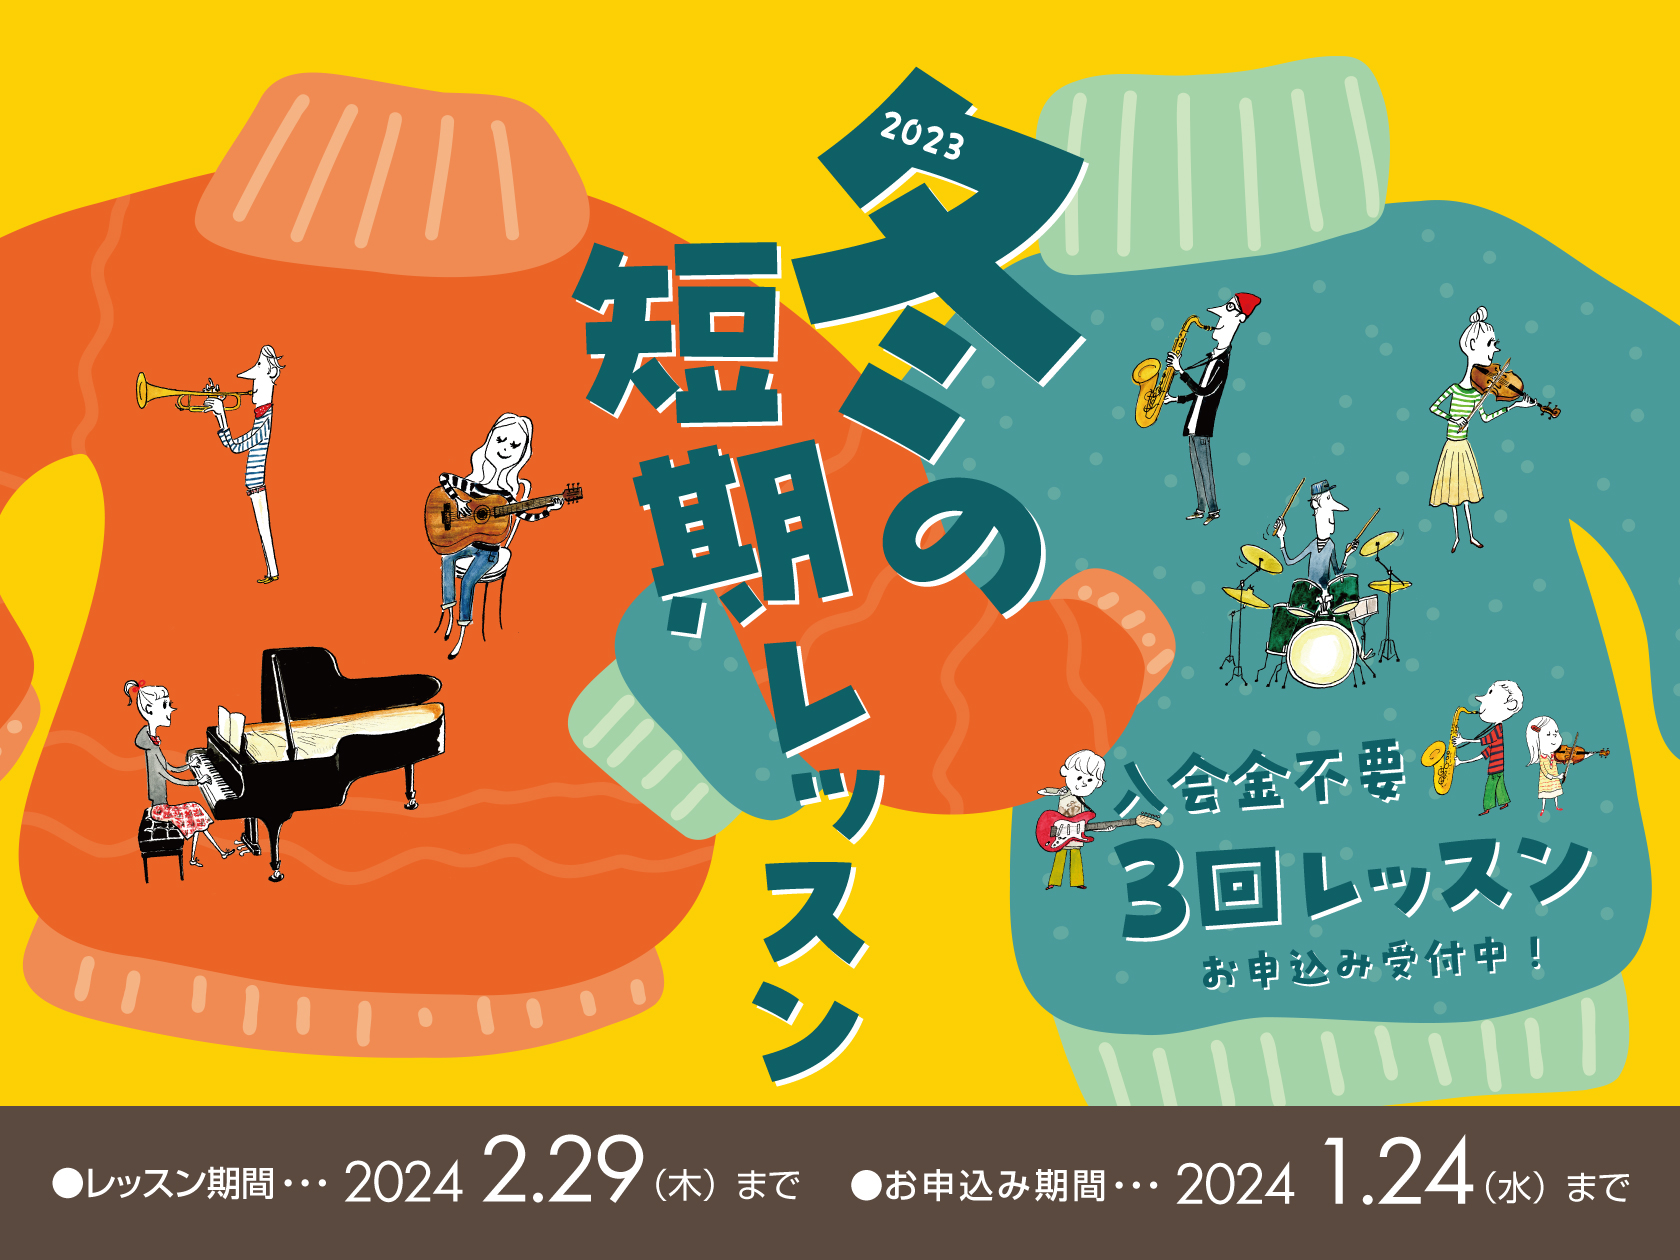 *冬の短期レッスン受講者募集中 [https://www.shimamura.co.jp/p/lesson/campaign/short_term_lesson.html:title=] *入会金不要で、1コース3回のレッスンが受けられます！ 現在島村楽器の音楽教室では、冬の短期レッスンを受付中です […]